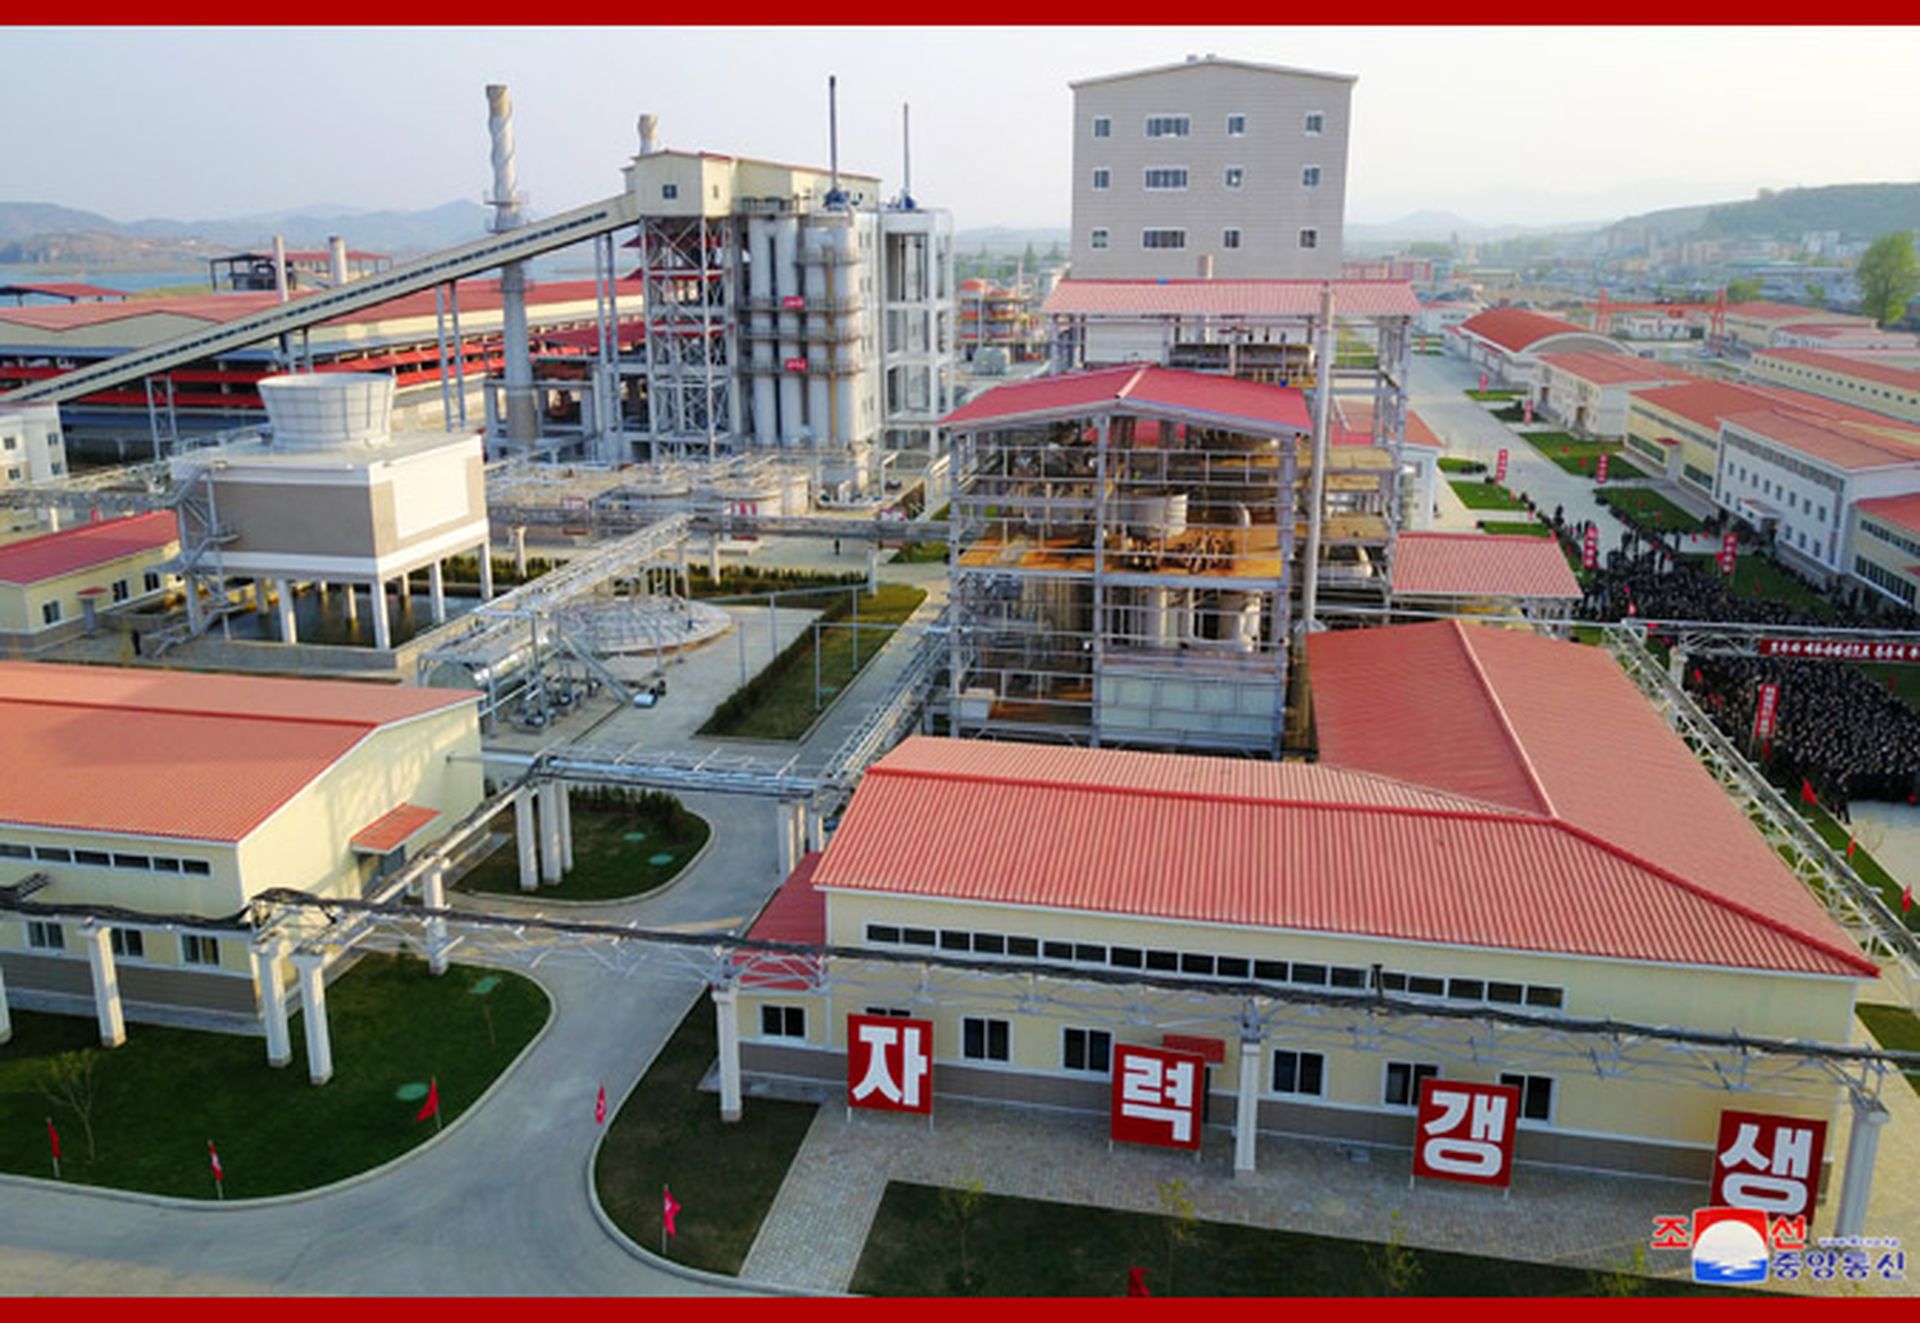 朝中社称顺天磷肥厂是新的化学工业基地，自力富强、自力繁荣伟大创造物的象征。（朝中社）